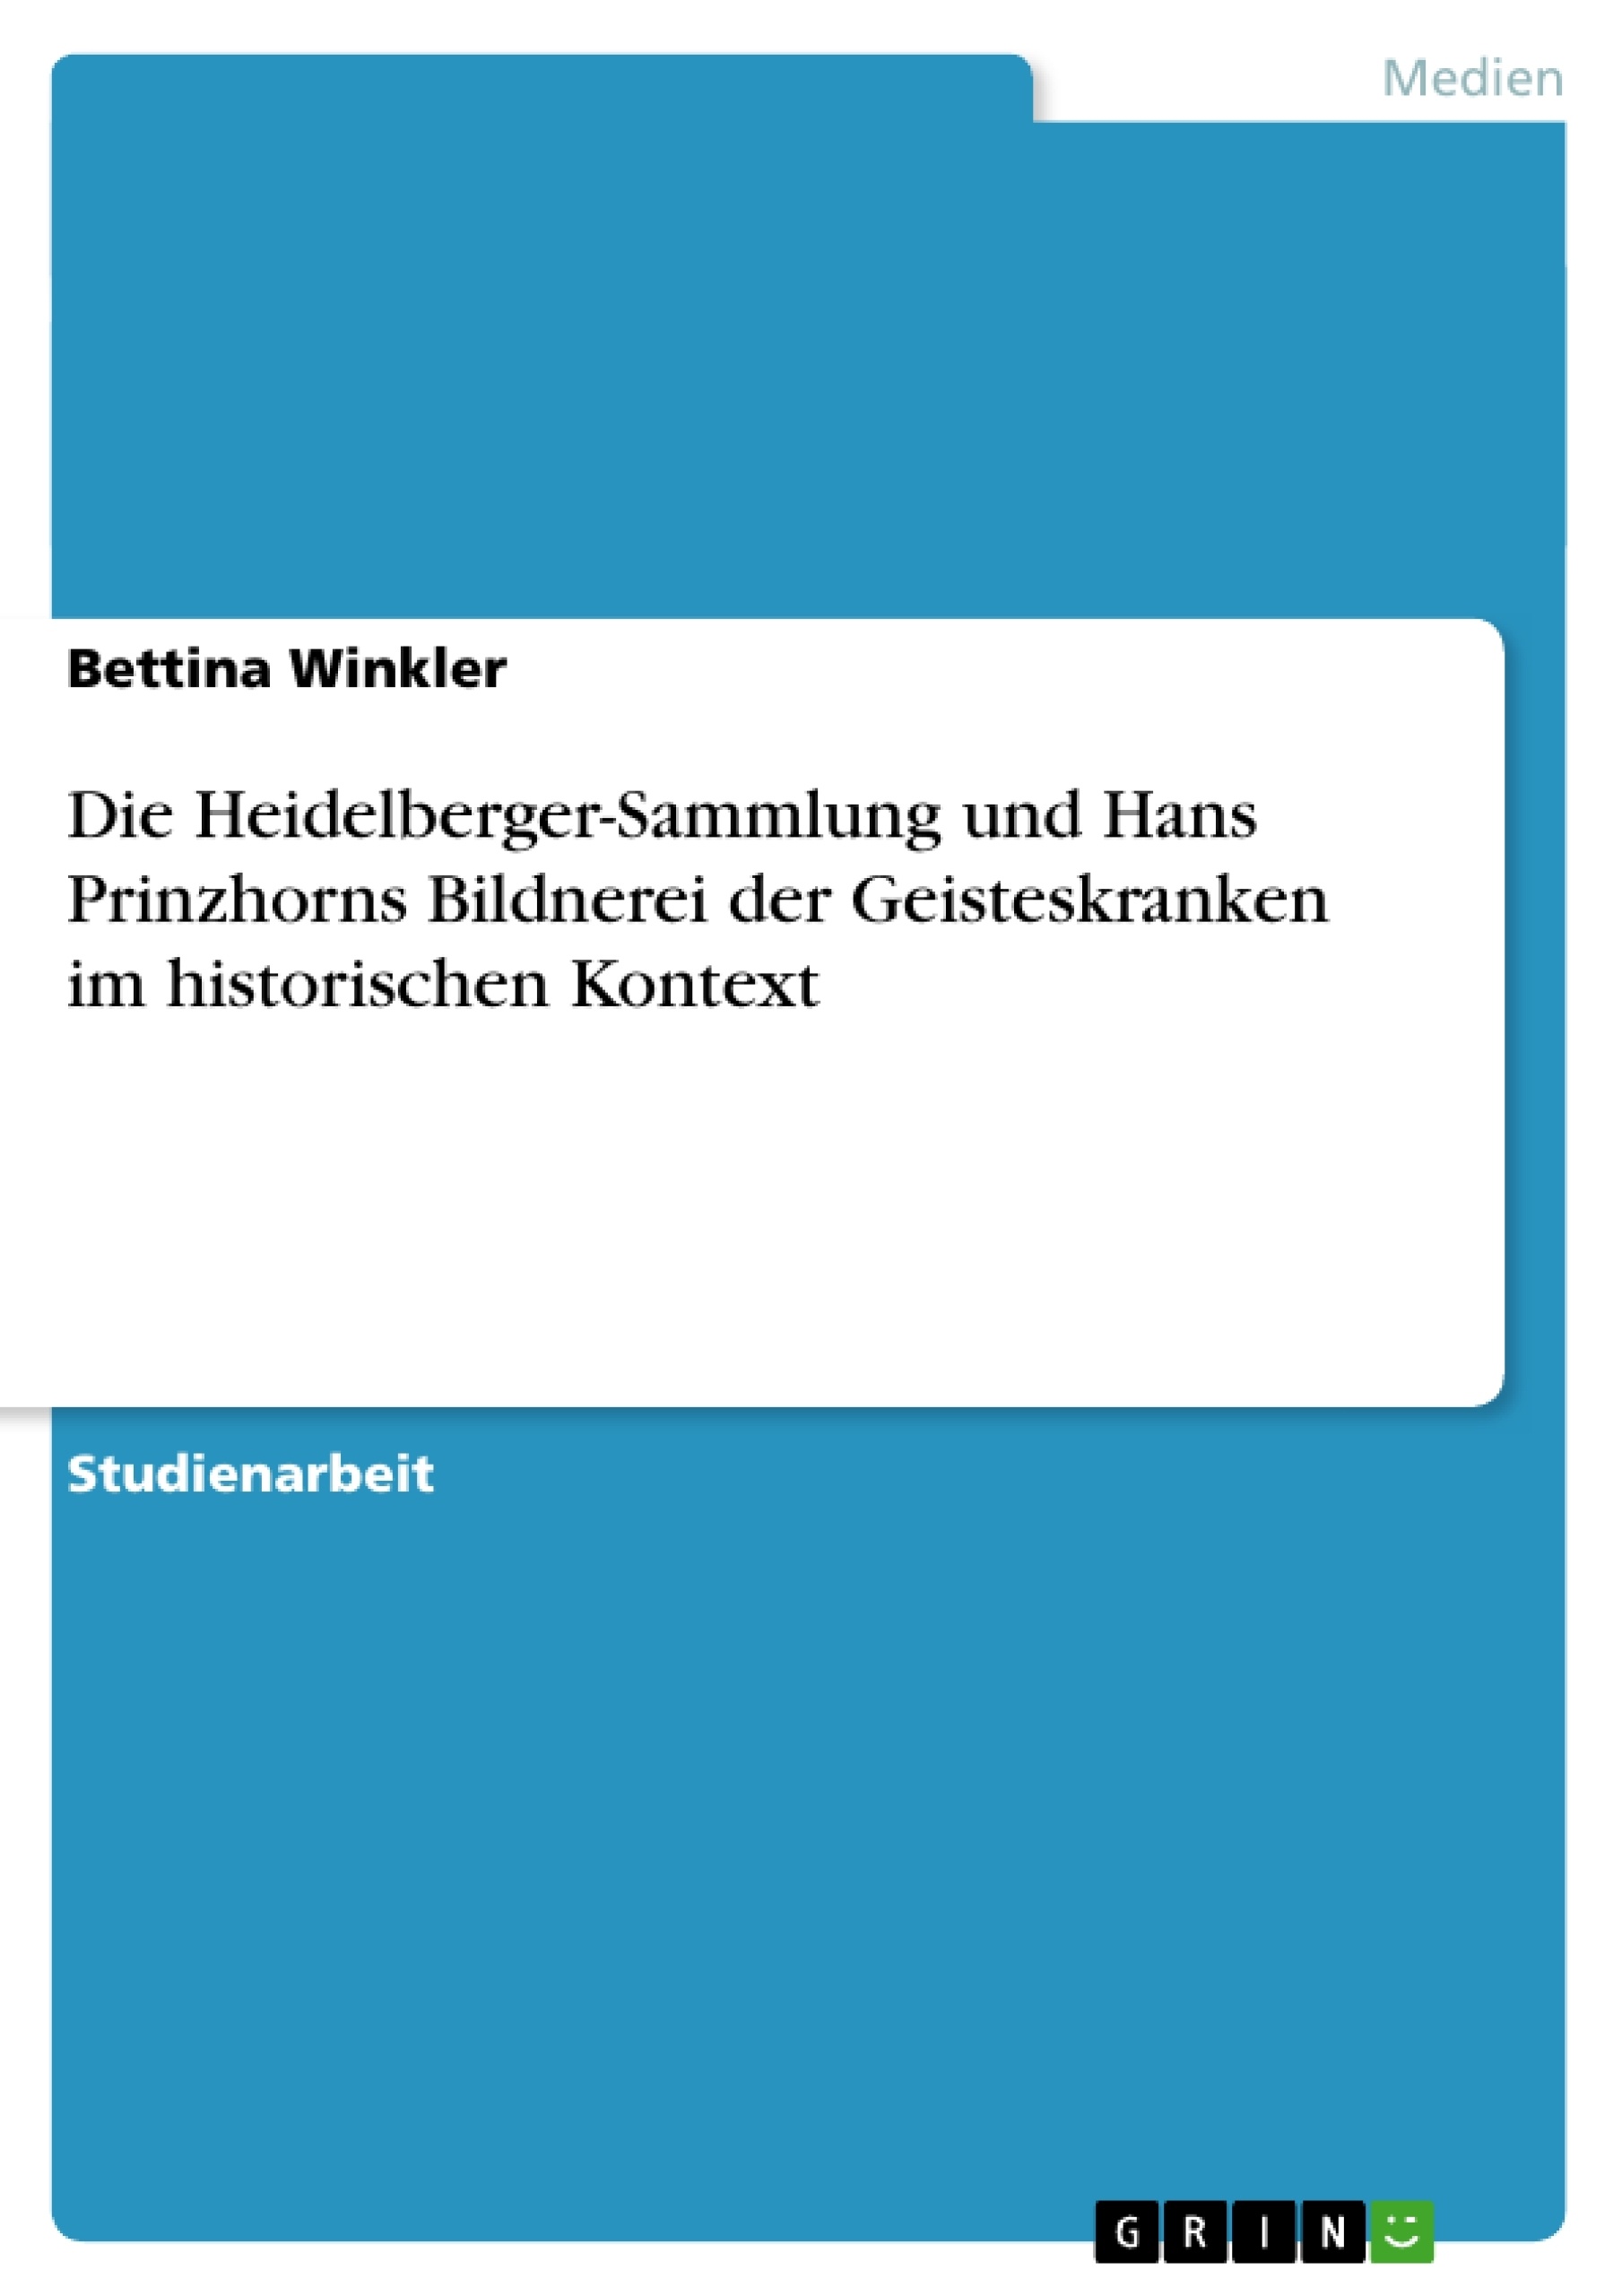 Titre: Die Heidelberger-Sammlung und Hans Prinzhorns  Bildnerei der Geisteskranken  im historischen Kontext